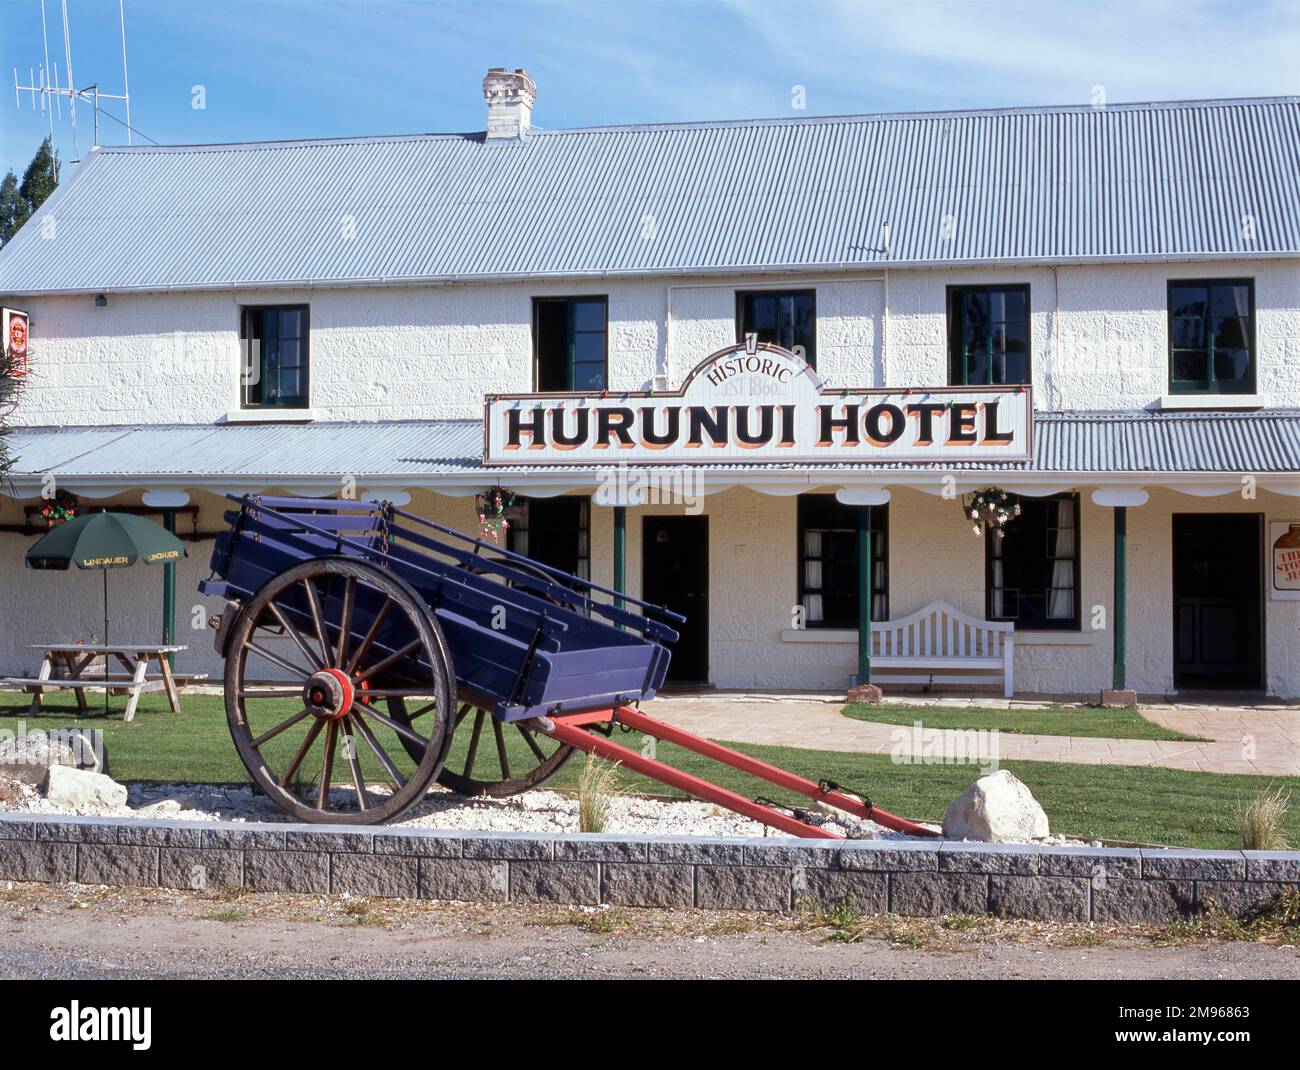 Vue sur l'historique Hôtel Hurunui à Hurunui, Île du Sud, Nouvelle-Zélande. L'hôtel Hurunui est célèbre en Nouvelle-Zélande pour son permis d'alcool, qu'il détient depuis 1860. Le propriétaire original, John Hastie, a obtenu une licence conditionnelle pour la maison d'hébergement Hurunui. Les conditions comprenaient « qu'il gardera huit lits dans quatre chambres à coucher; qu'il abritait six chevaux; qu'il fournisse des aires de stockage pour le bétail; qu'il fournisse des chevaux pour les voyageurs à ford la rivière; et qu'il dirige également des étrangers vers un lieu de passage de bois sûr. » En 1982, un petit groupe d'agriculteurs locaux s'est rassemblé pour sauver l'hôtel af Banque D'Images